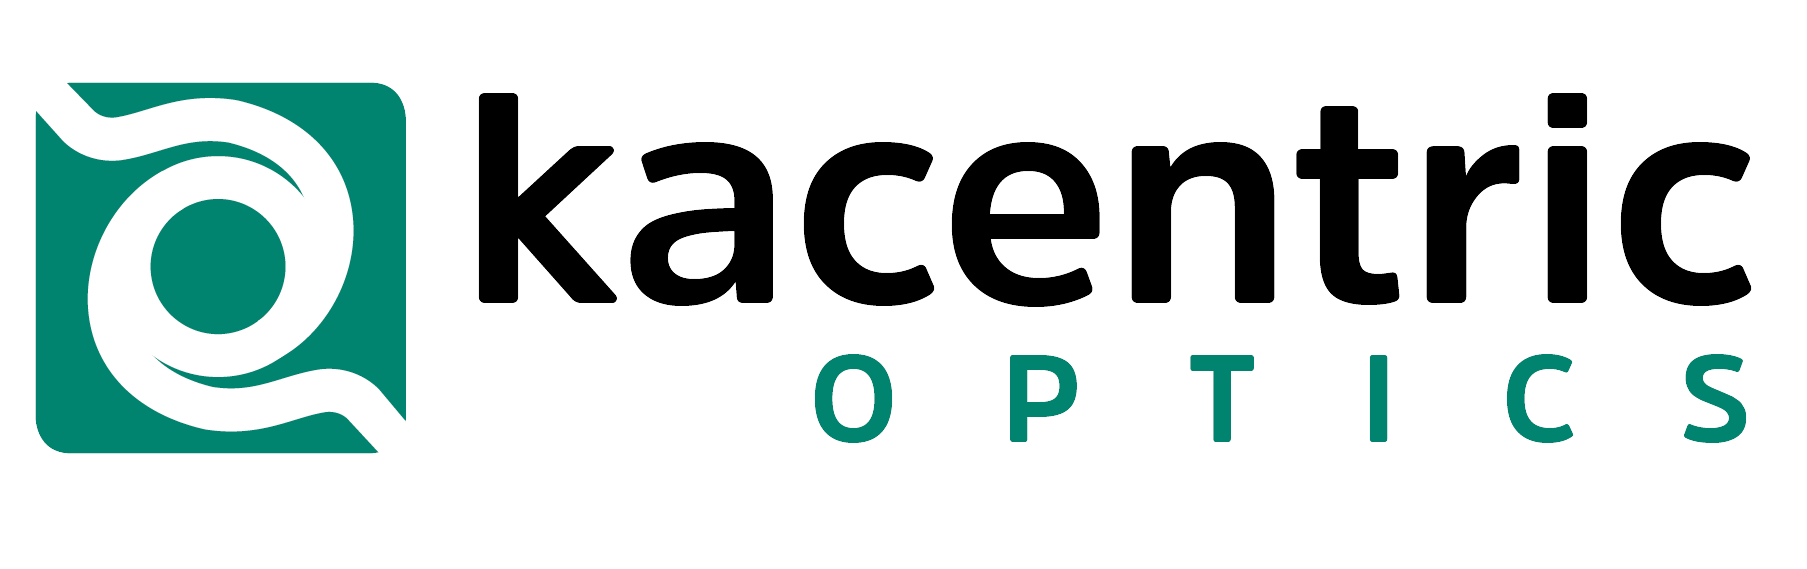 logo-Kacentric-optics